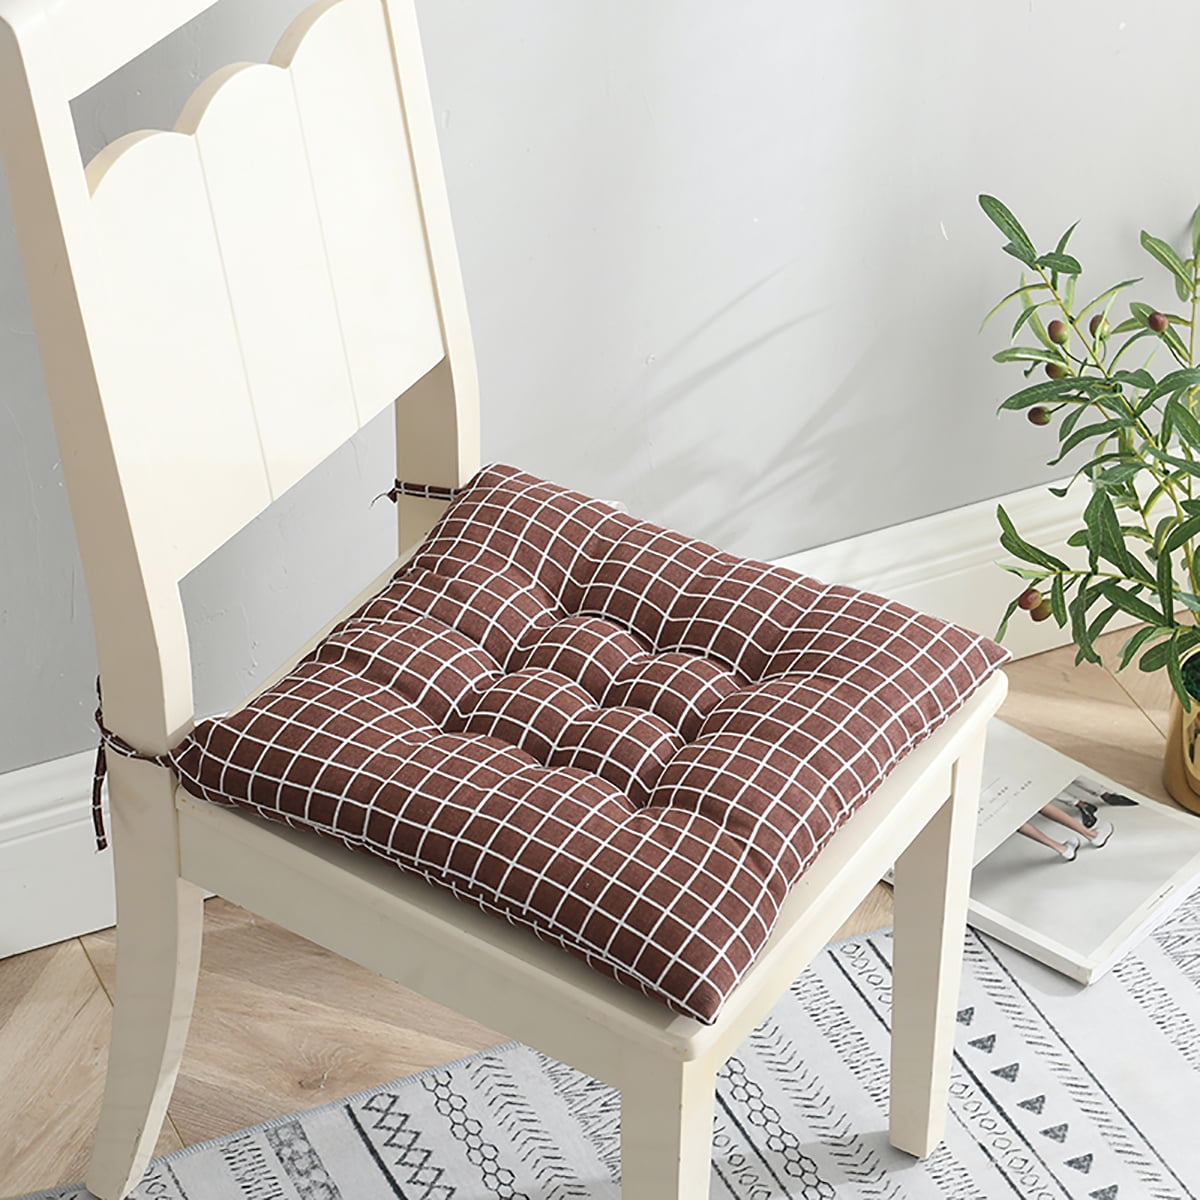 Noarlalf Seat Cushion Office Chair Cushion for Thin Soft Plush Seat Cushions for Non-Slip Chair Cushions Comfortable Chairs Seat Pad Seat Cover Chair